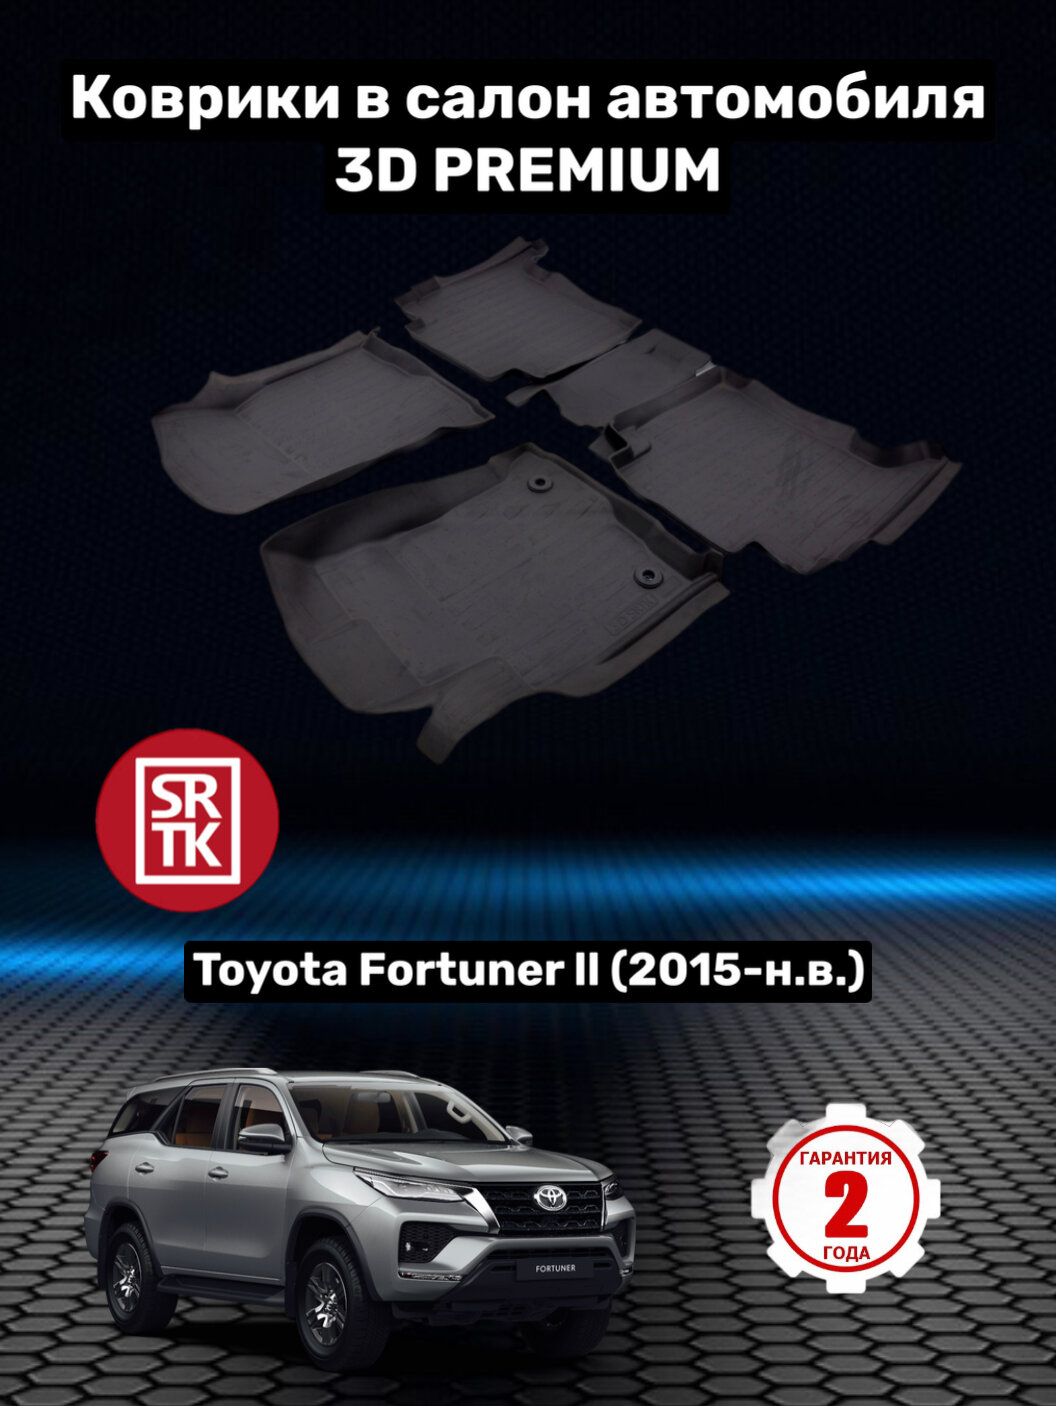 Коврики резиновые в салон для Тойота Фортунер/Toyota Fortuner (2015-) 3D PREMIUM SRTK (Саранск) комплект в салон